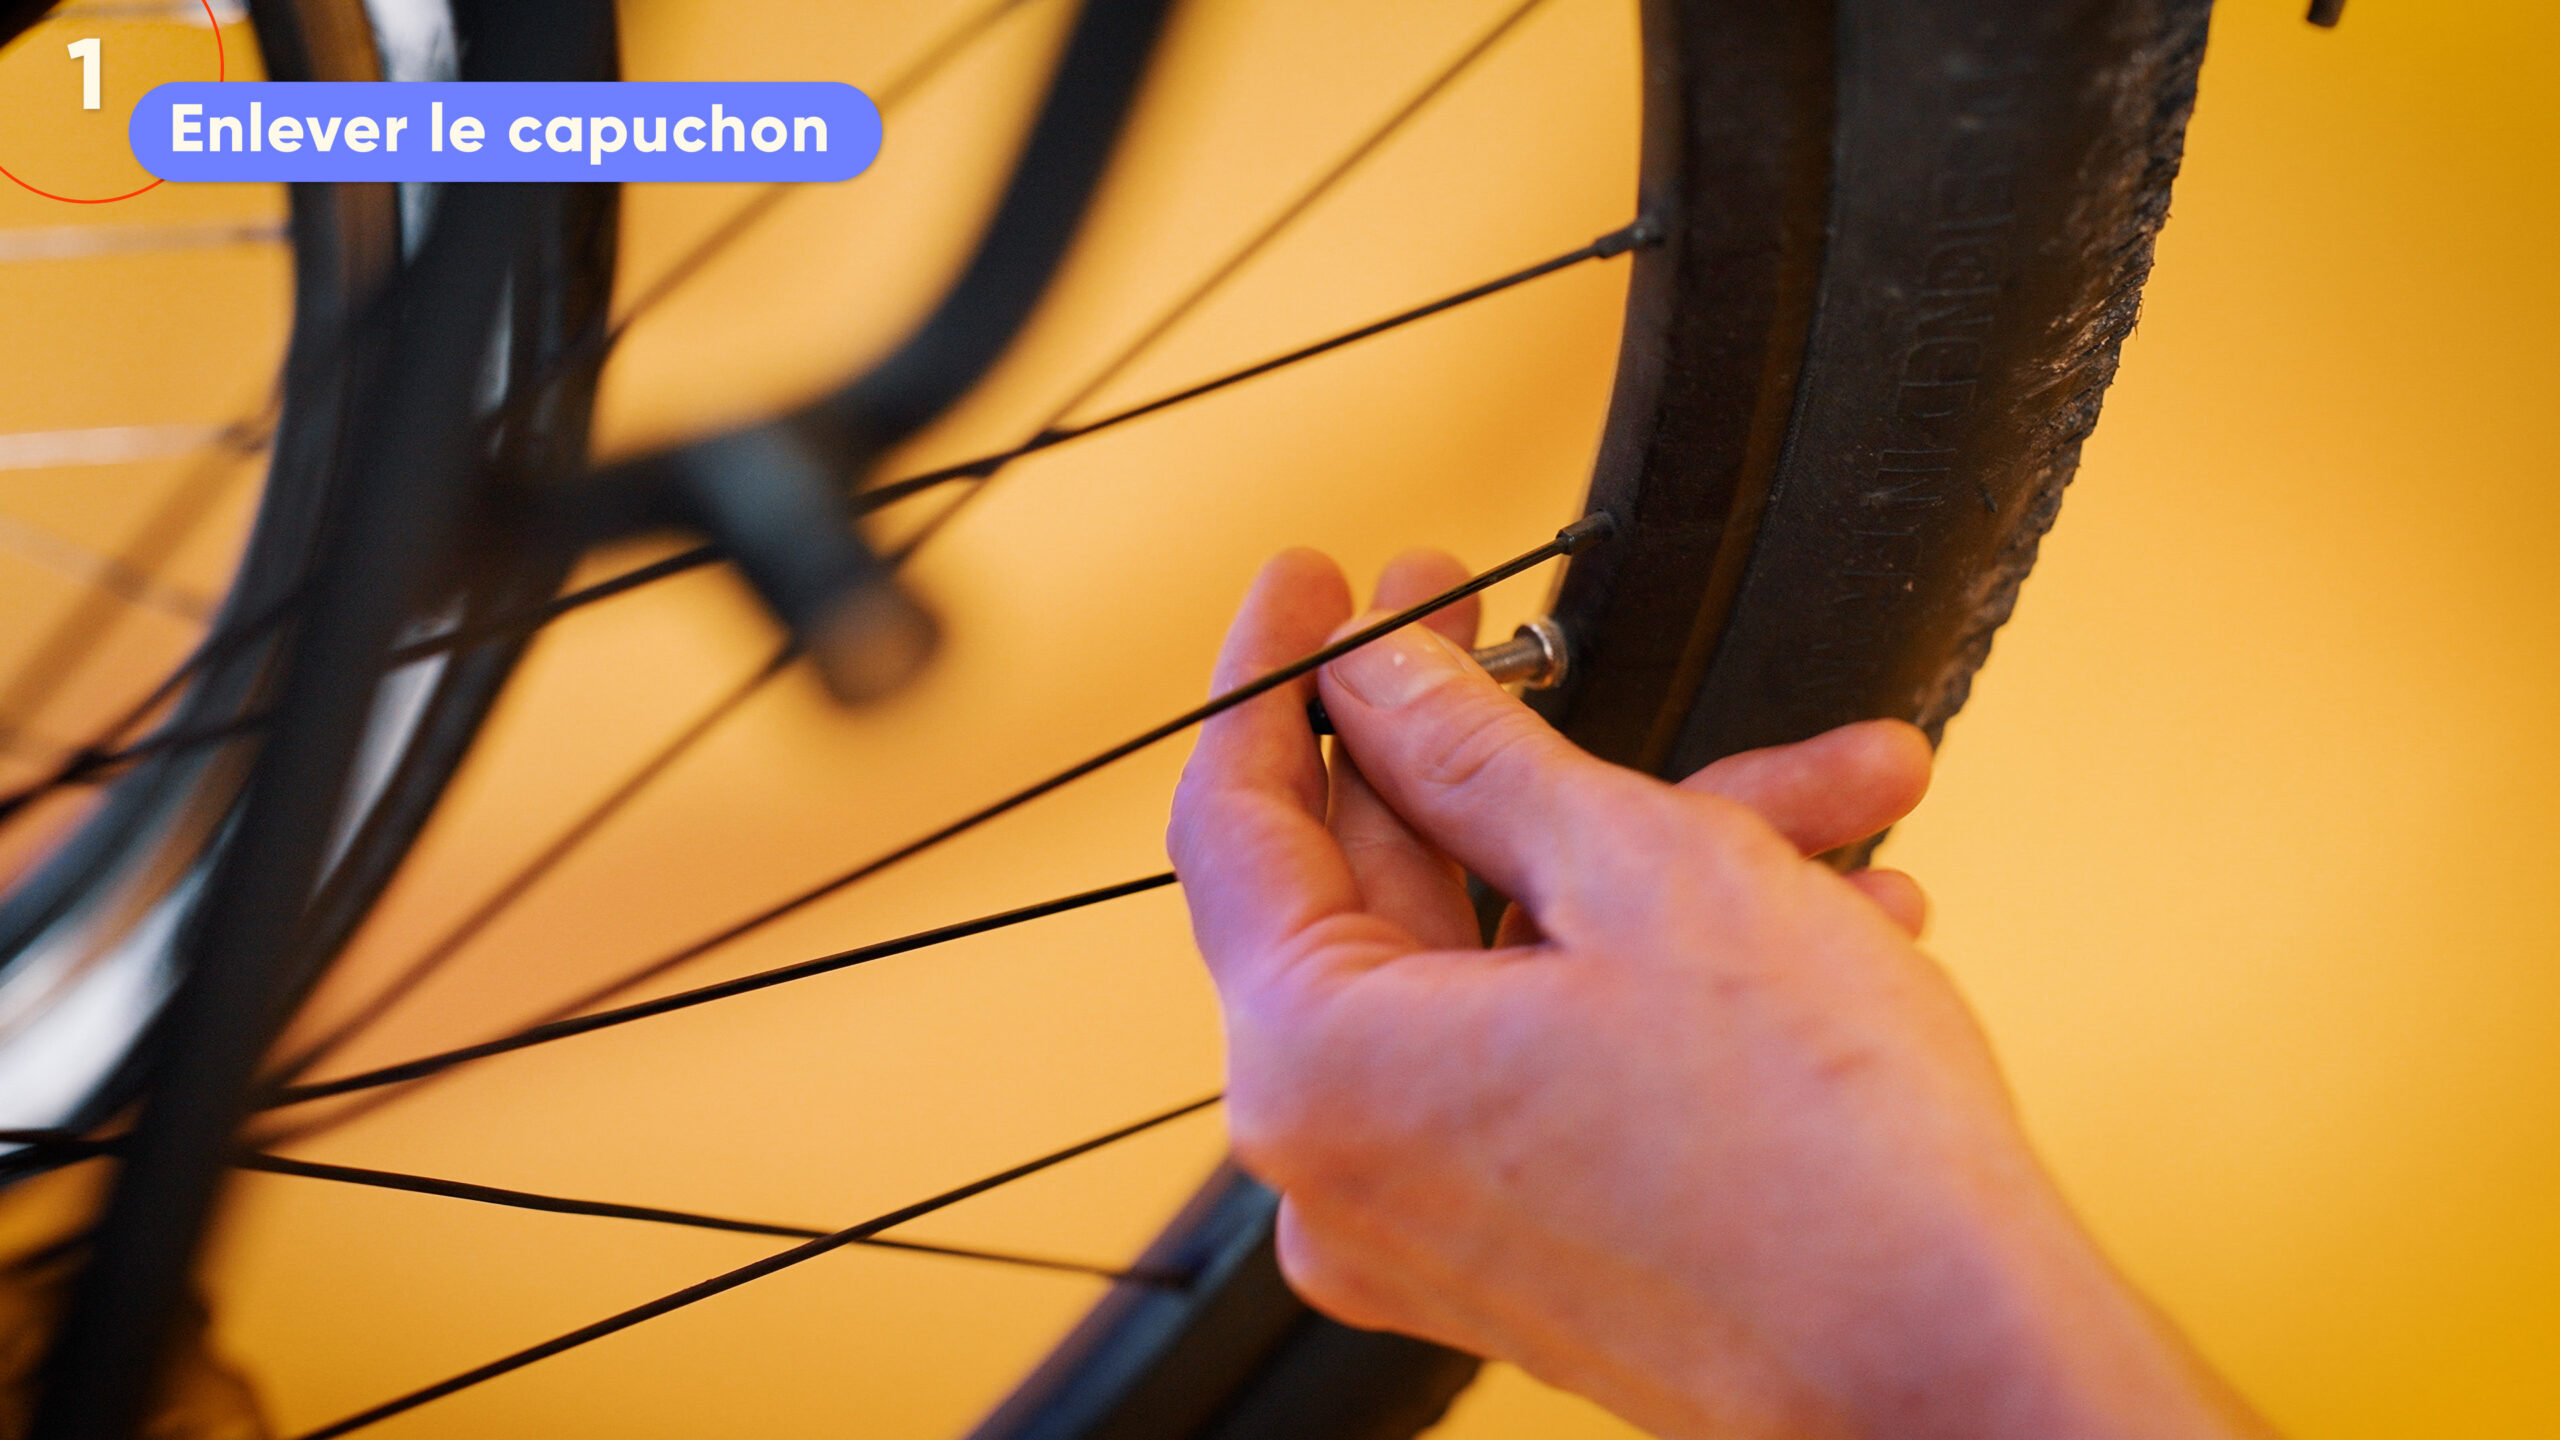 À quelle pression gonfler un pneu de vélo ville électrique ?